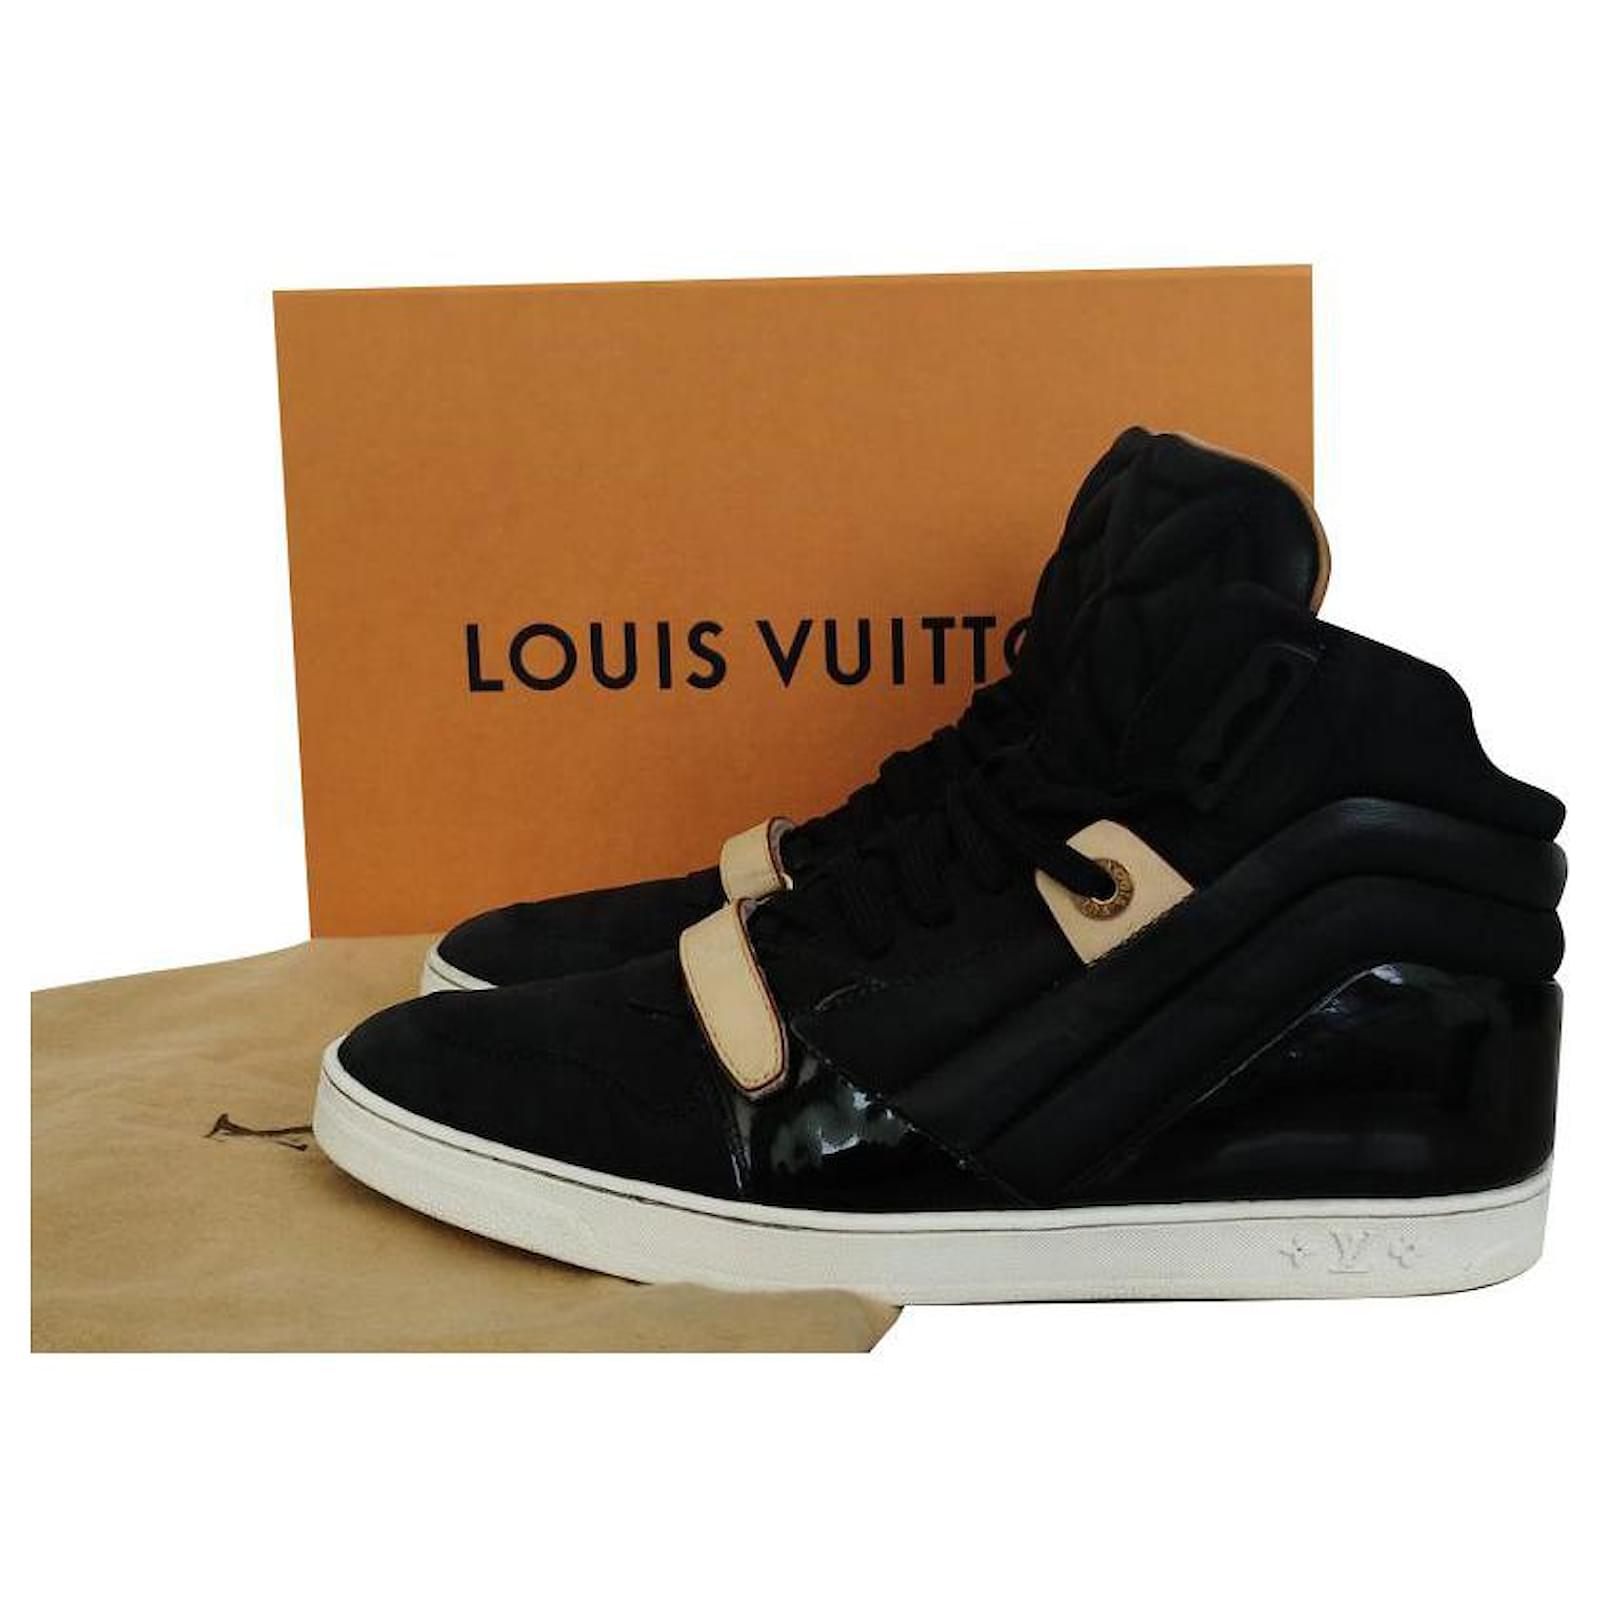 Authentic LV shoes Dustbag - .de